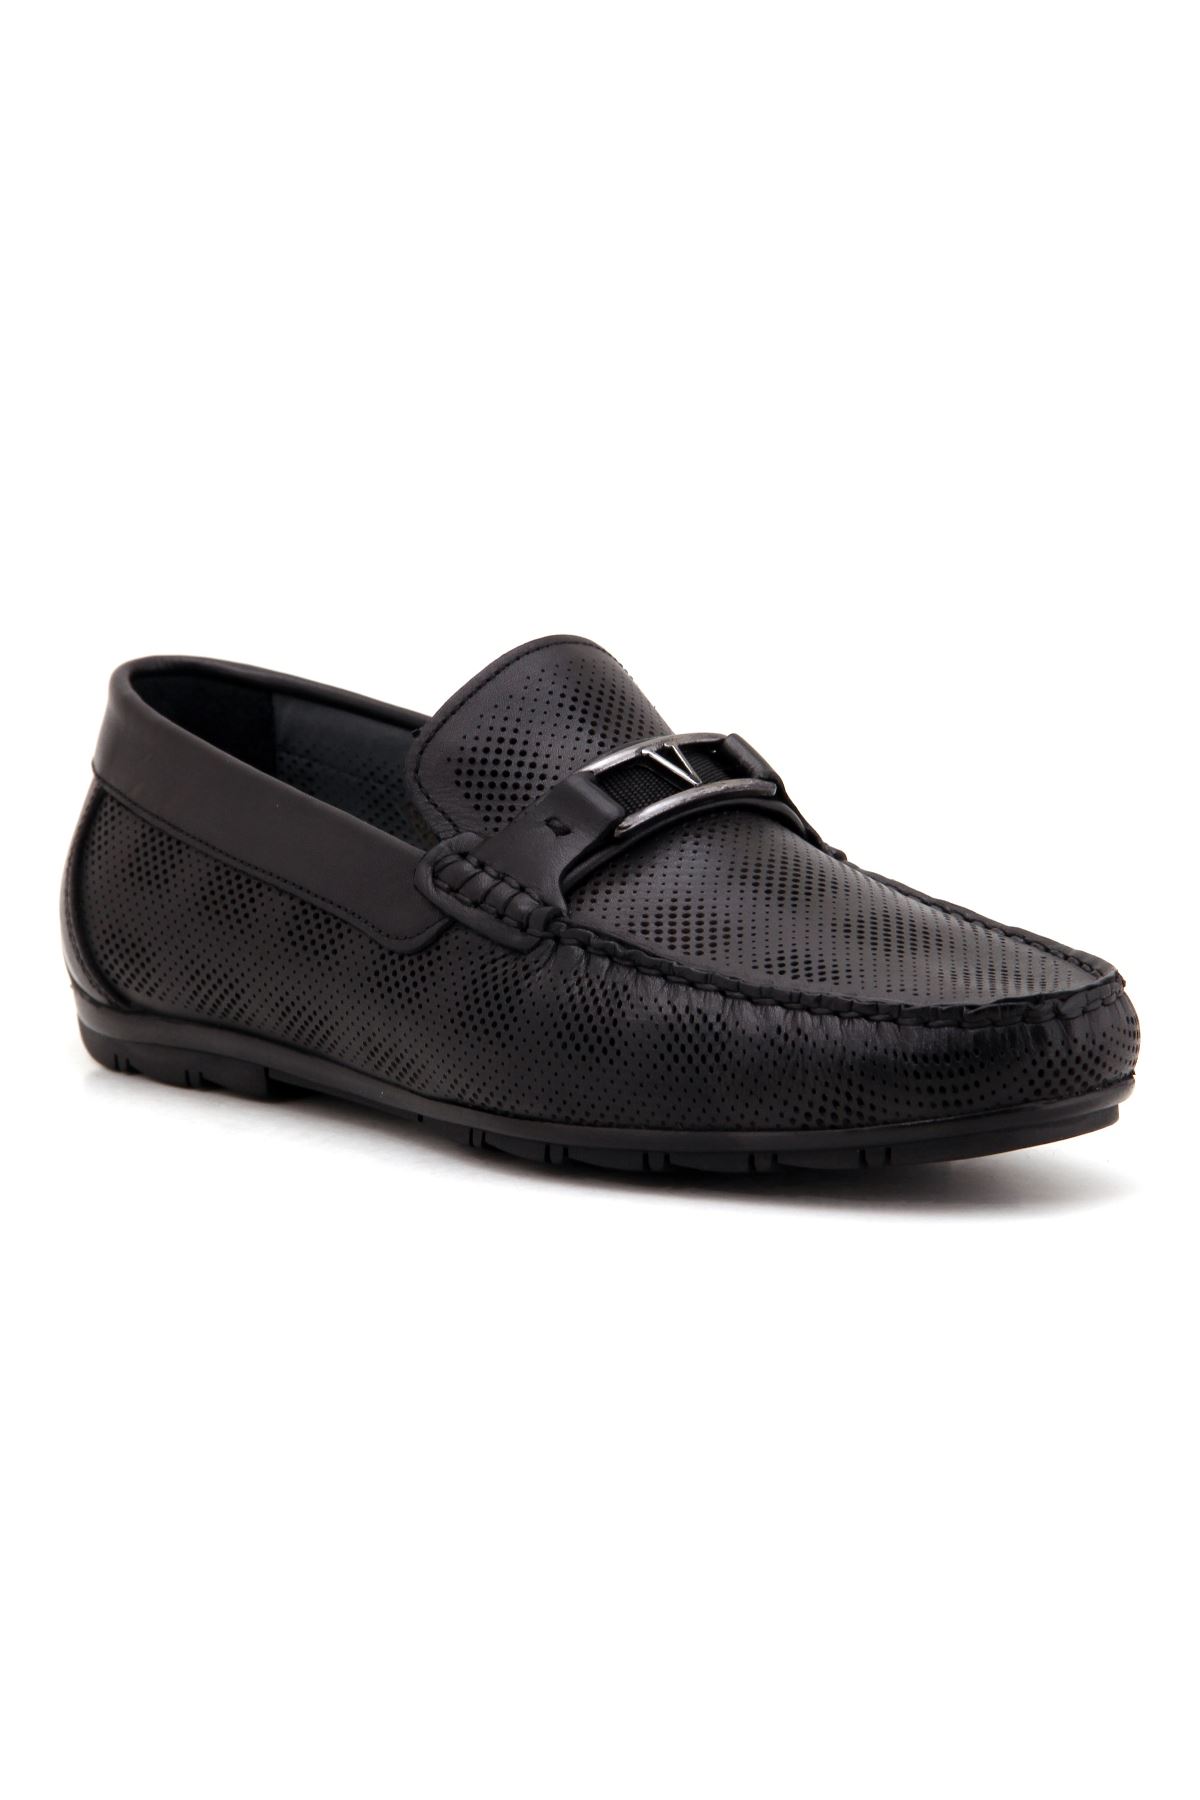 Marcomen 11087 Deri Günlük Erkek Ayakkabı - Siyah